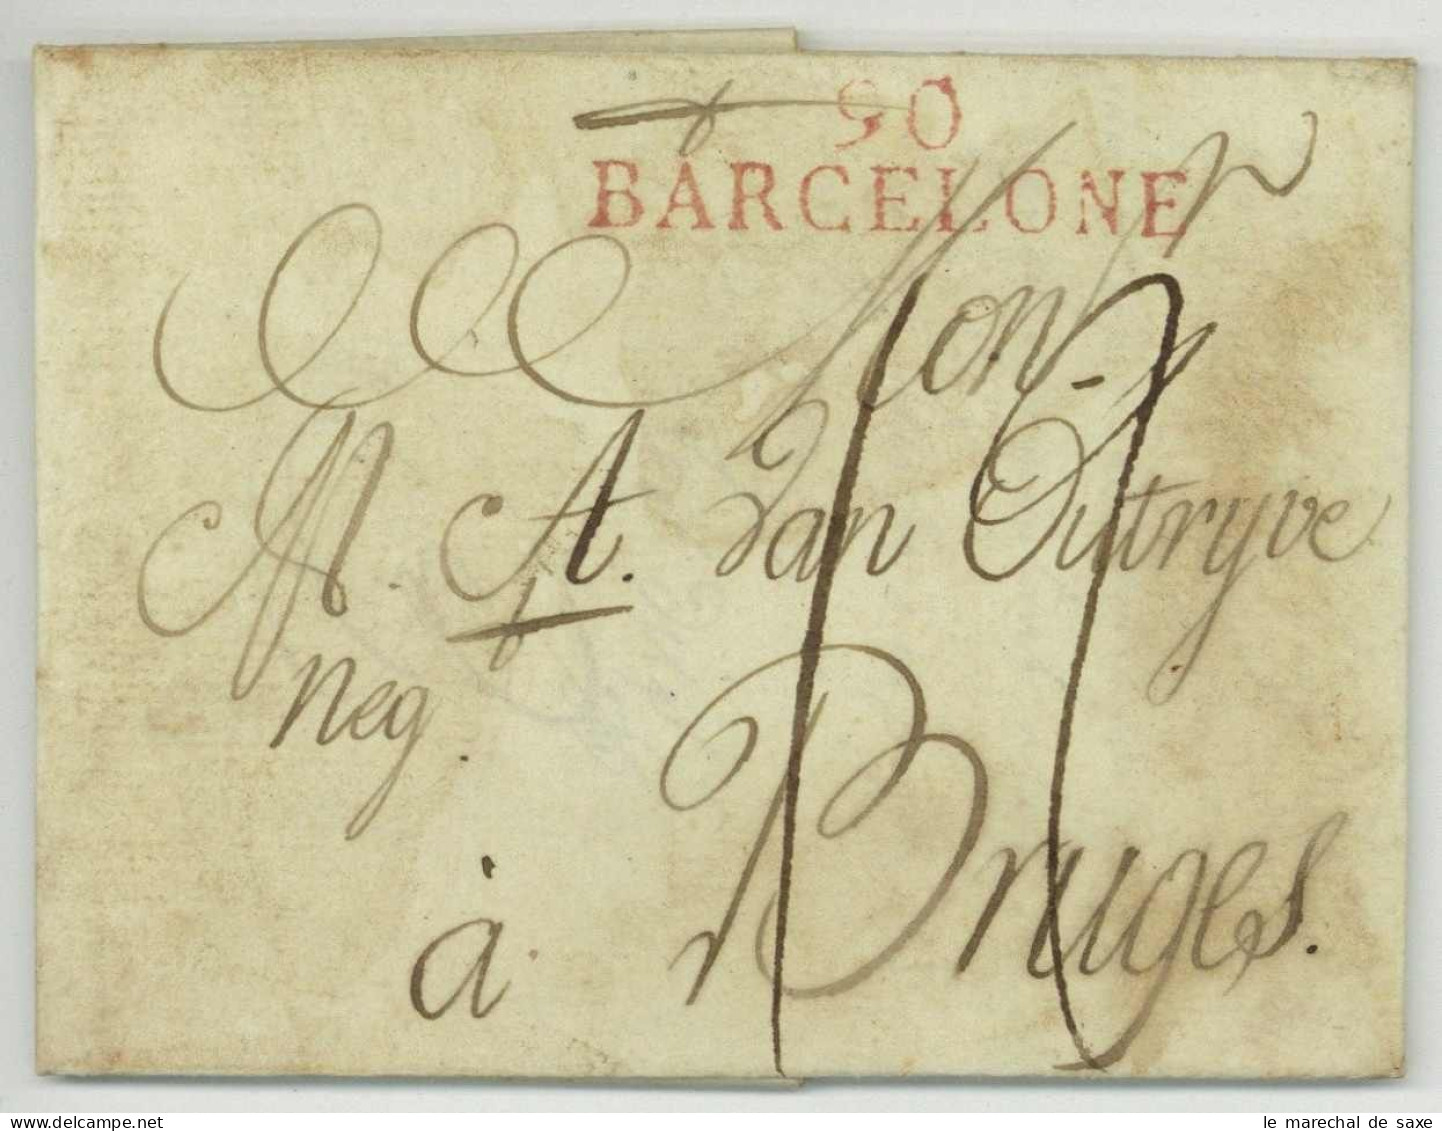 90 BARCELONE Barcelona 1813 Pour Bruges Belgique Desinfectée Purifiée Desinfected Mail - 1792-1815 : Departamentos Conquistados